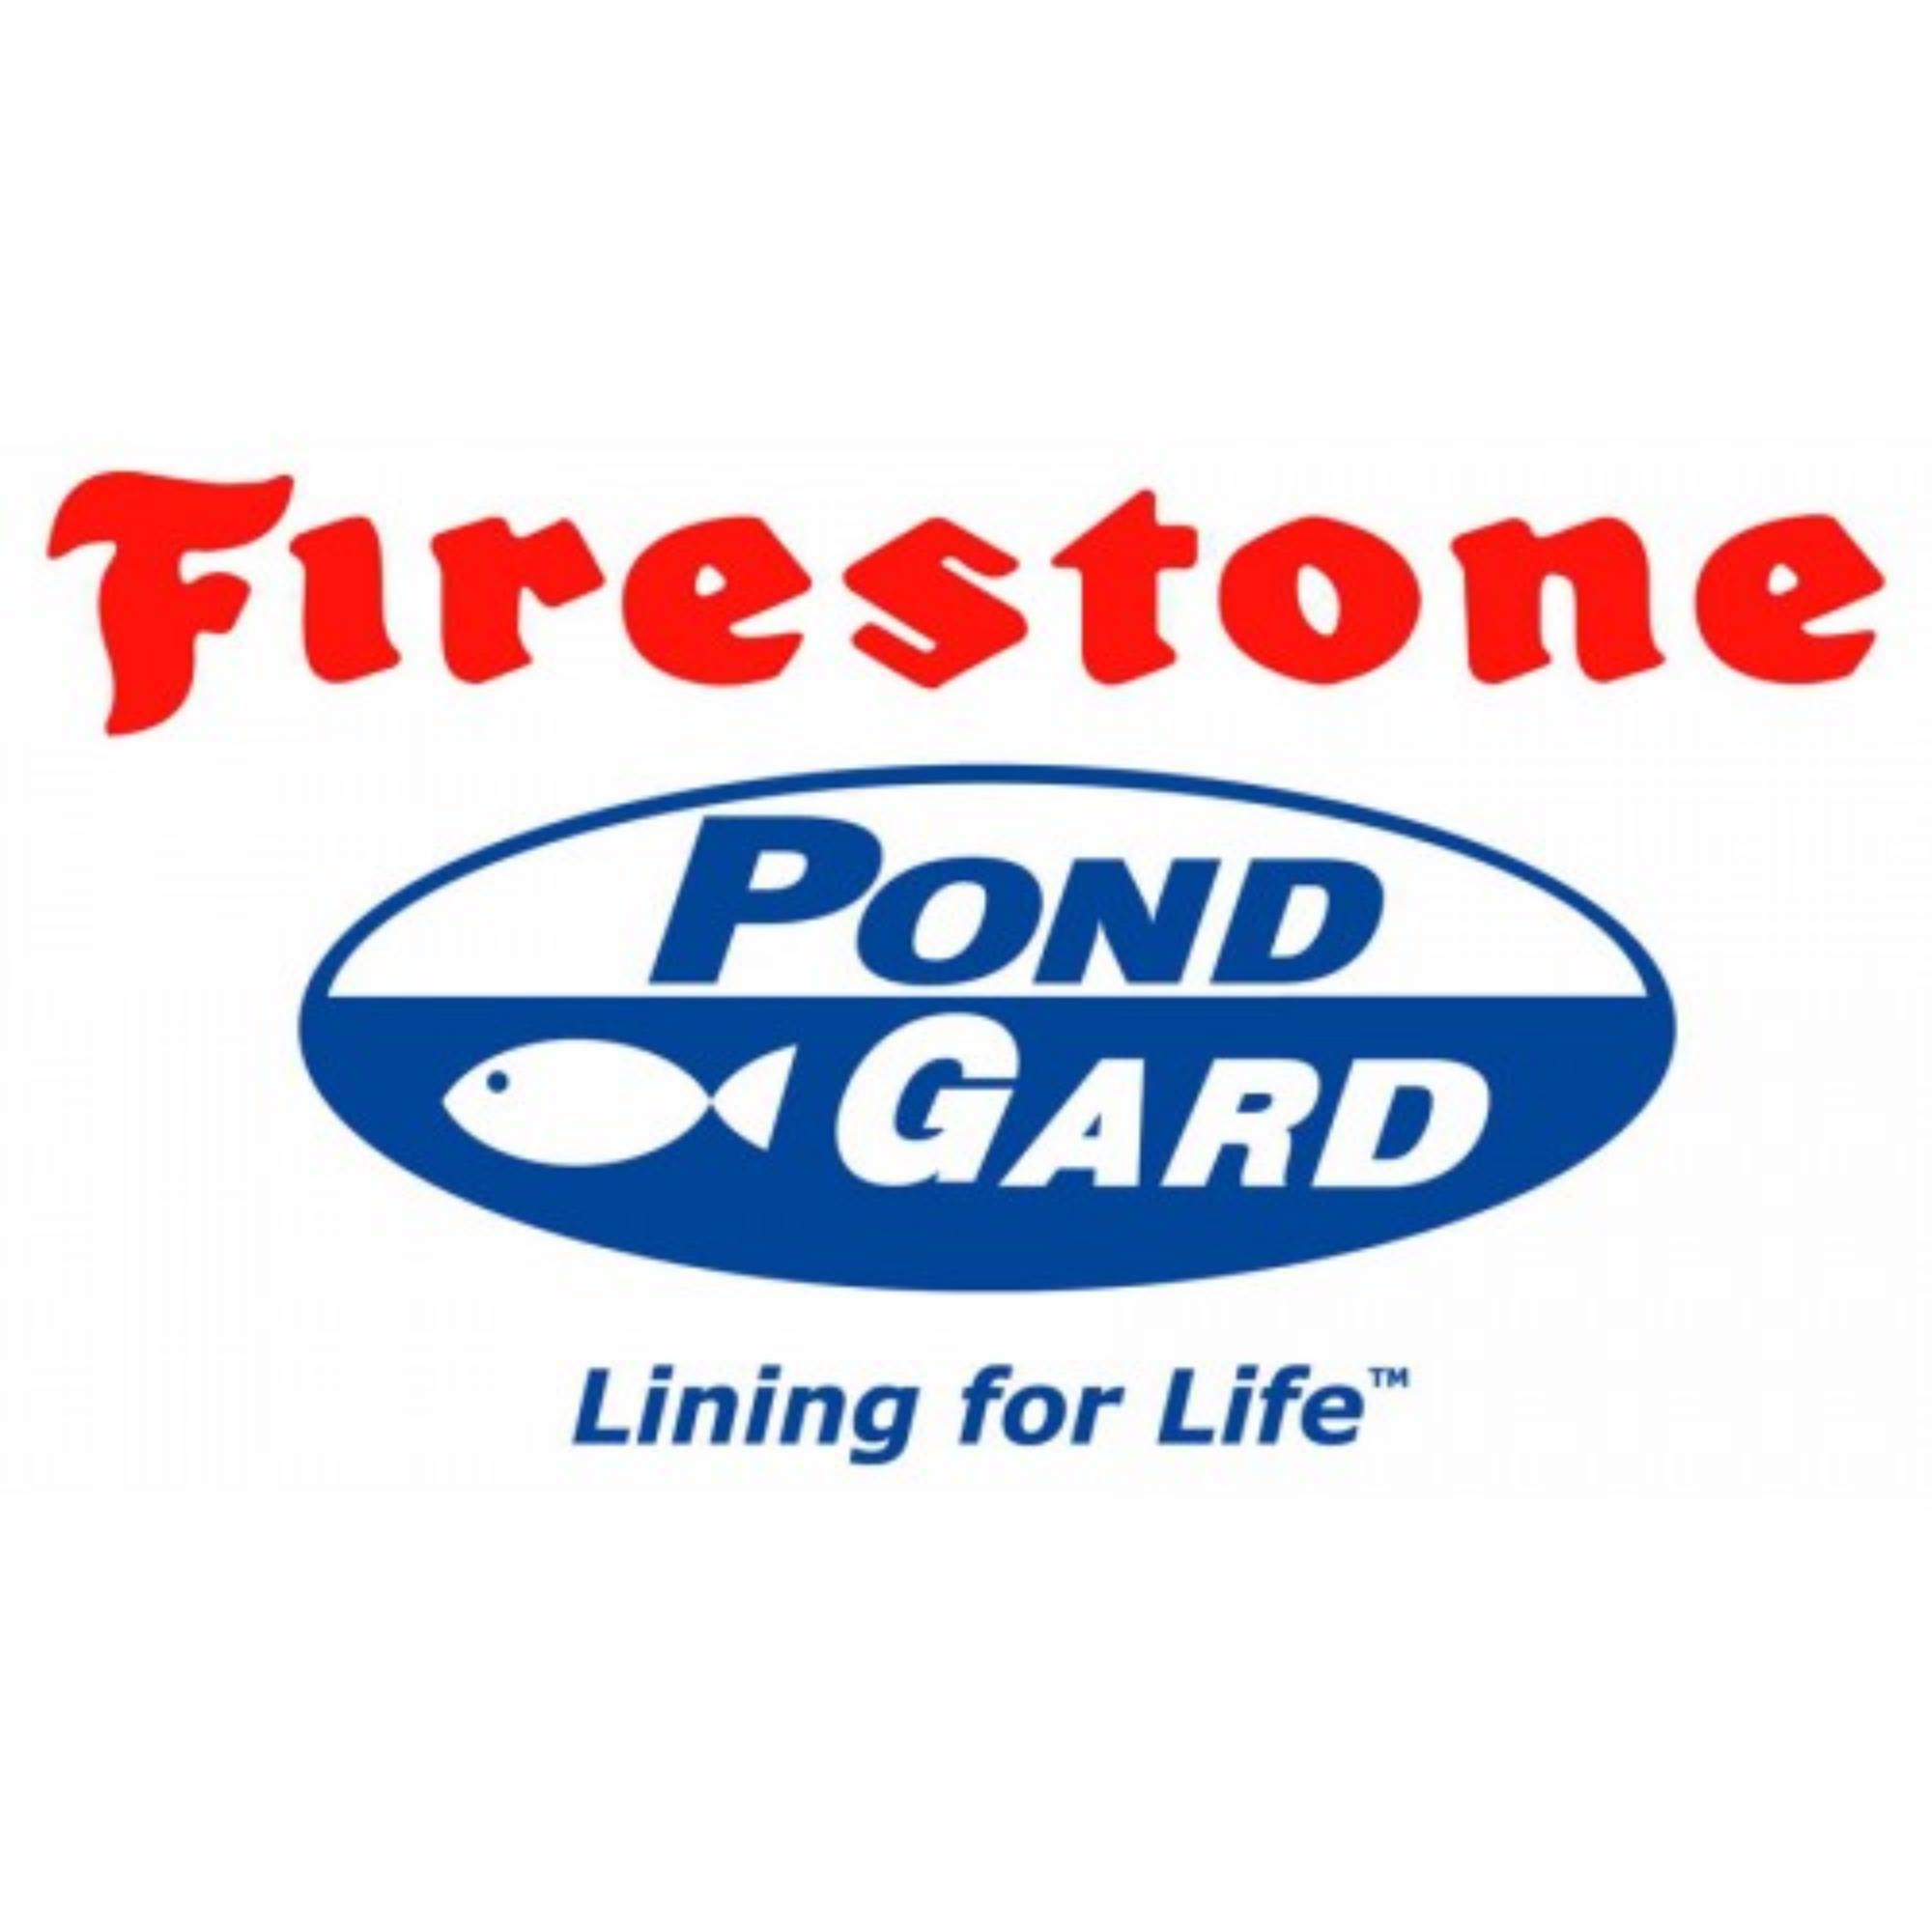 Firestone Pond Gard